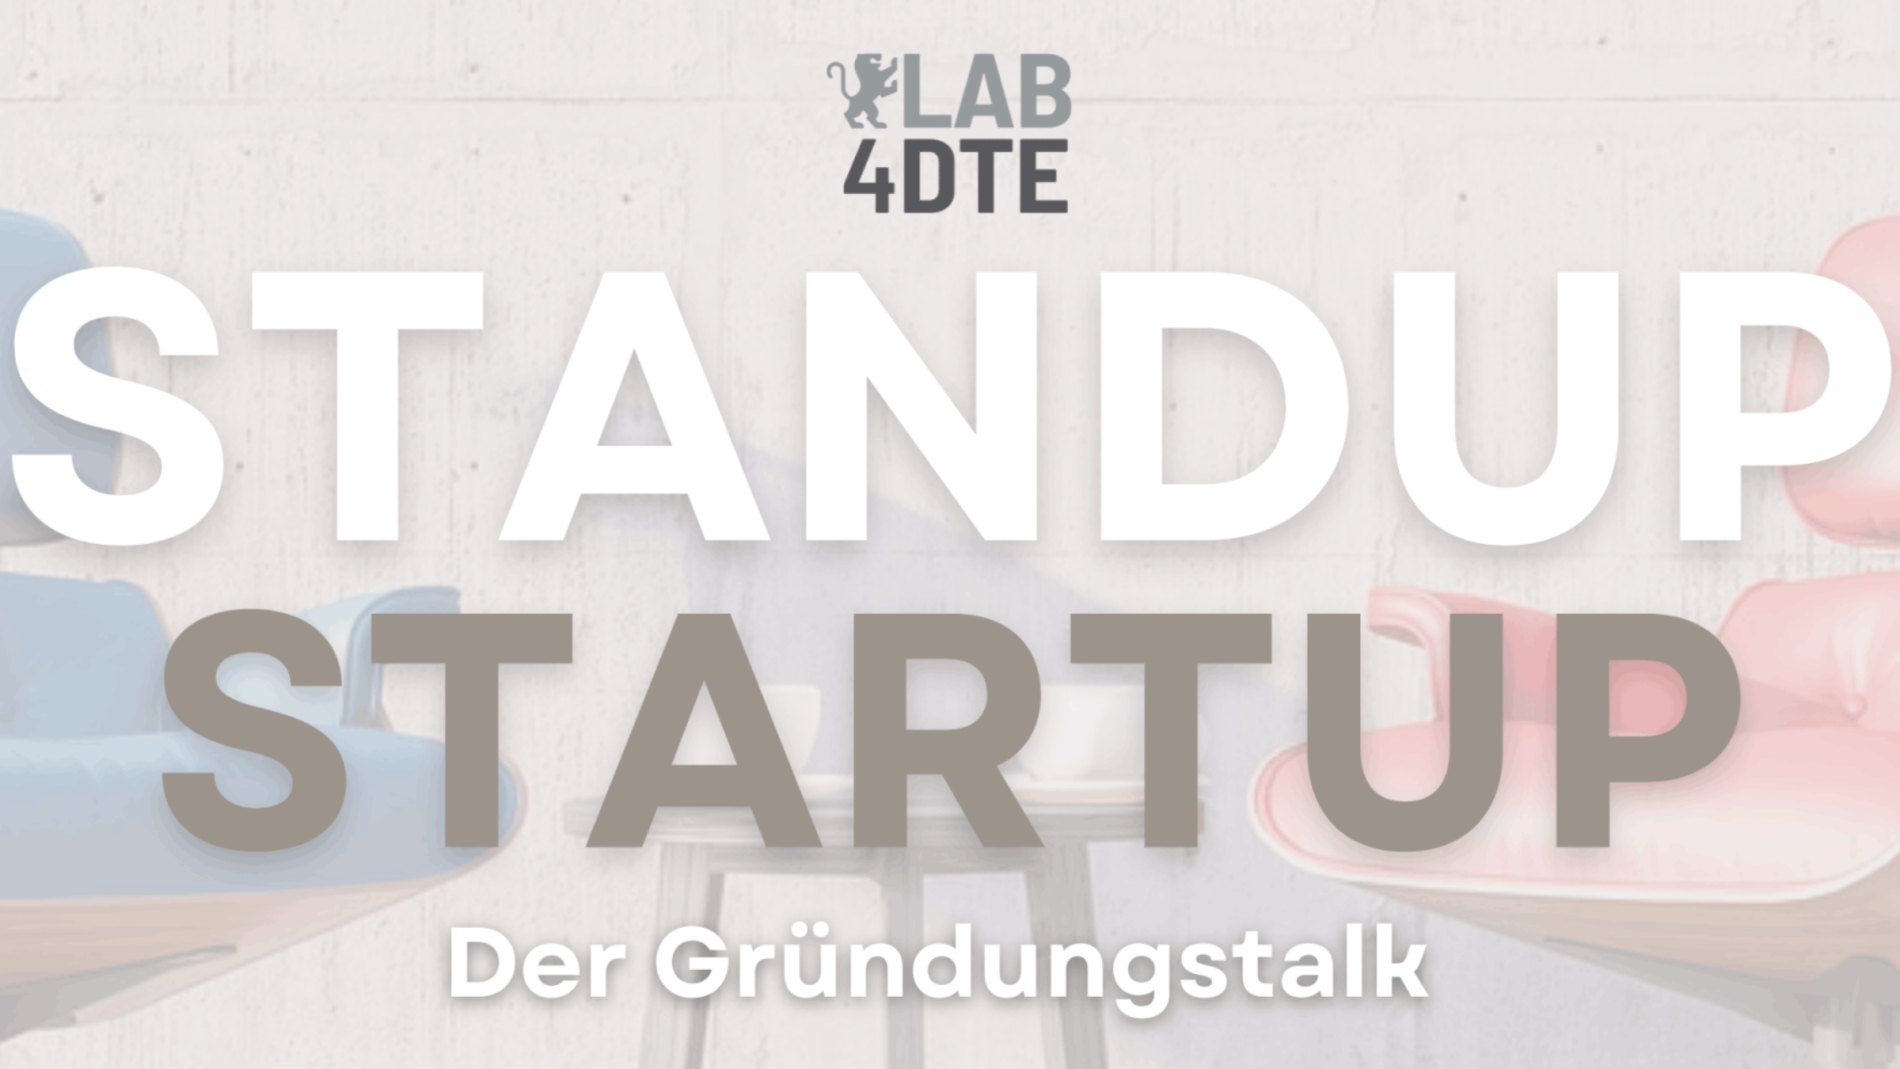 RWU LAB4DTE Standup Startup - Der Gründungstalk